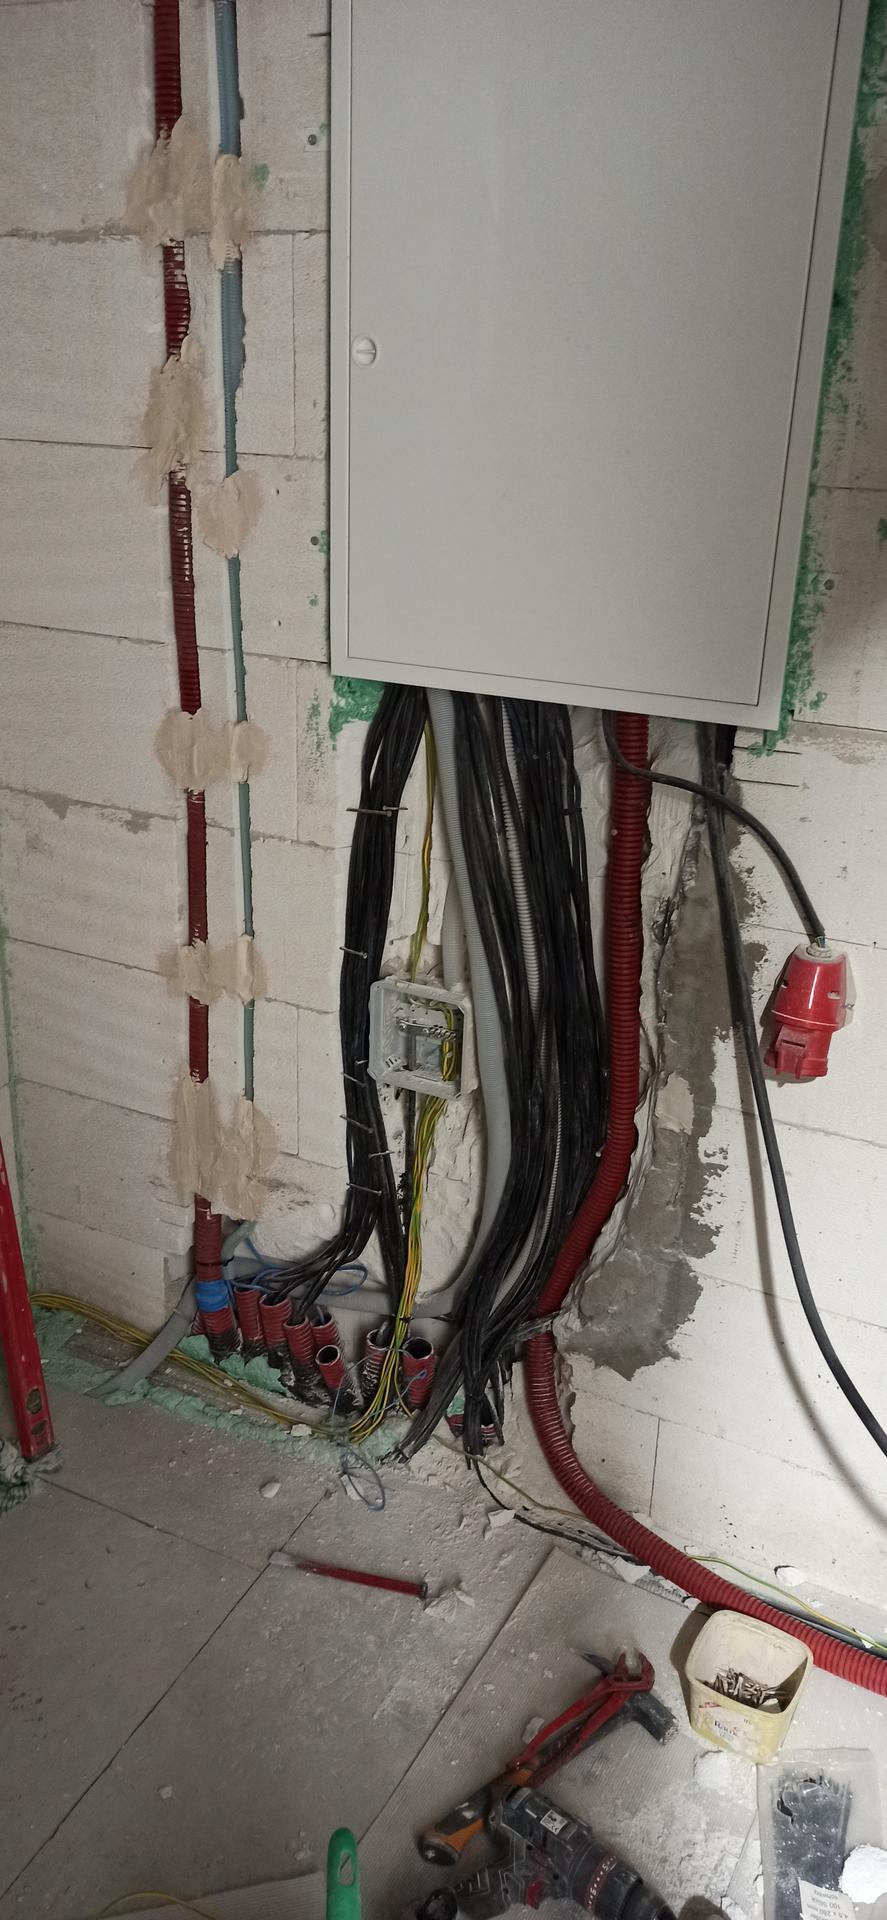 Rozvody elektro, data, audio - Trochu jsem urovnal kabeláž a přidal zeleno žlutý kabel pro po spojení a pár chrániček pro přívod k budoucí FVE. 